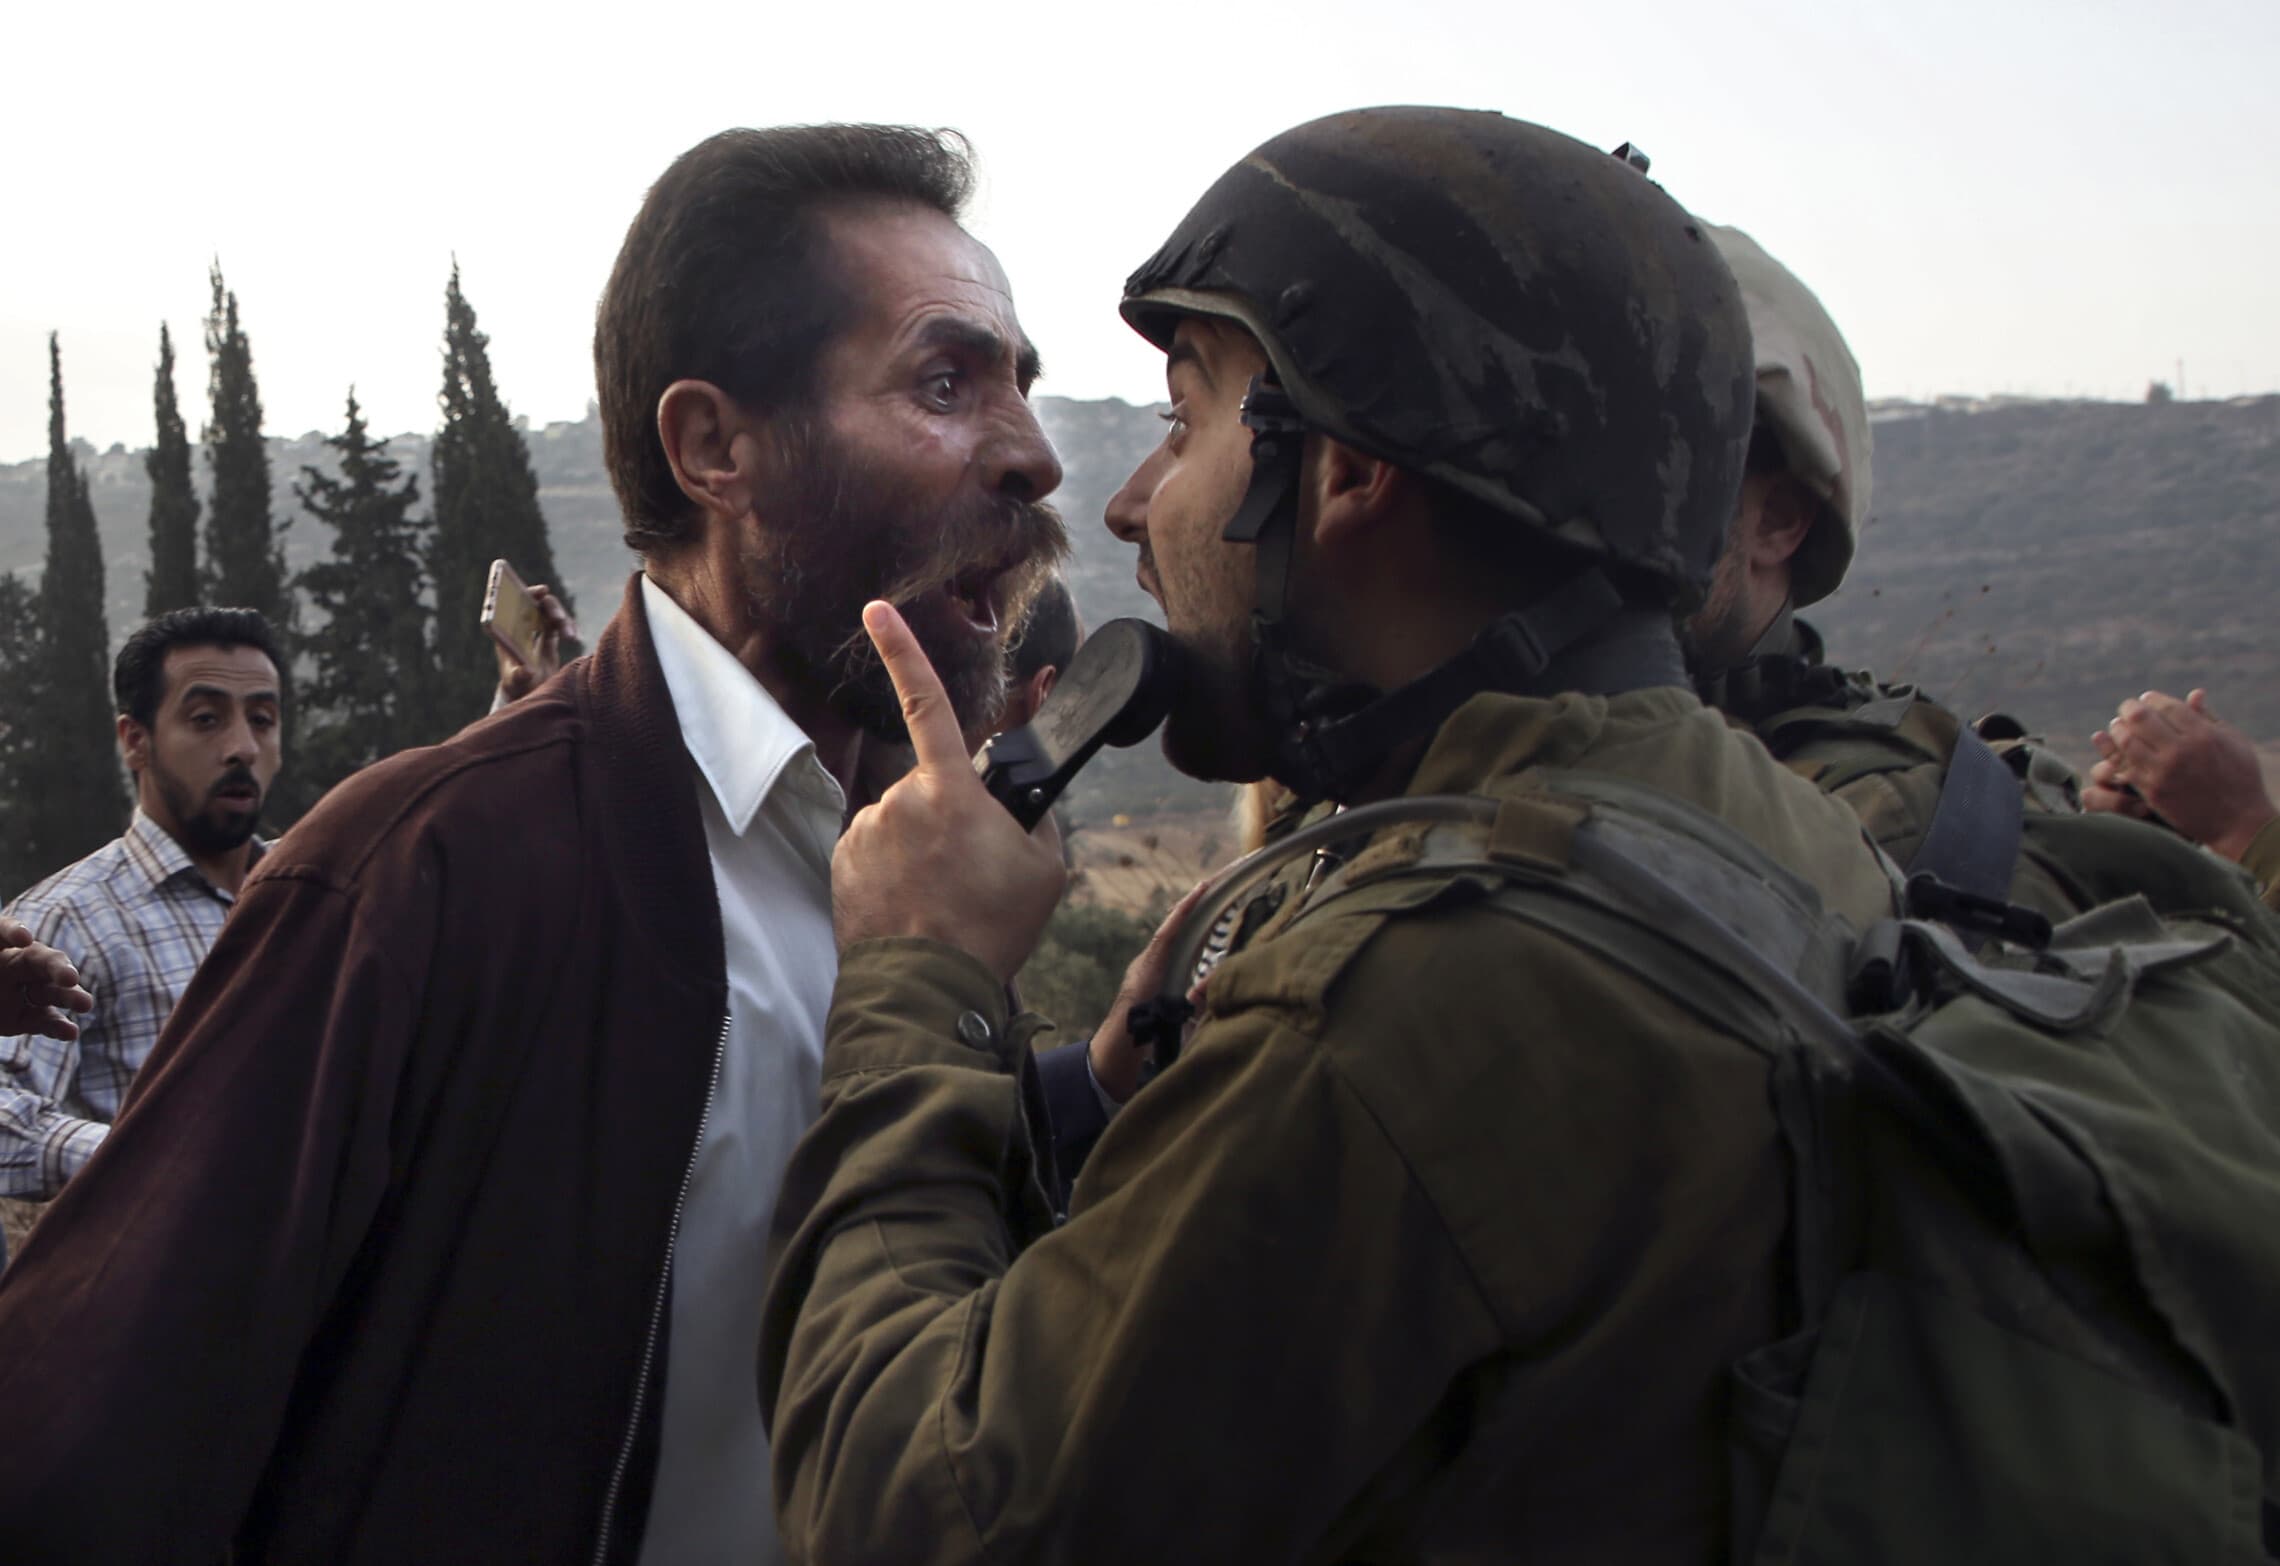 גבר פלסטיני מתעמת עם חייל בגדה המערבית, 15 באוקטובר 2018 (צילום: AAFAR ASHTIYEH / AFP)